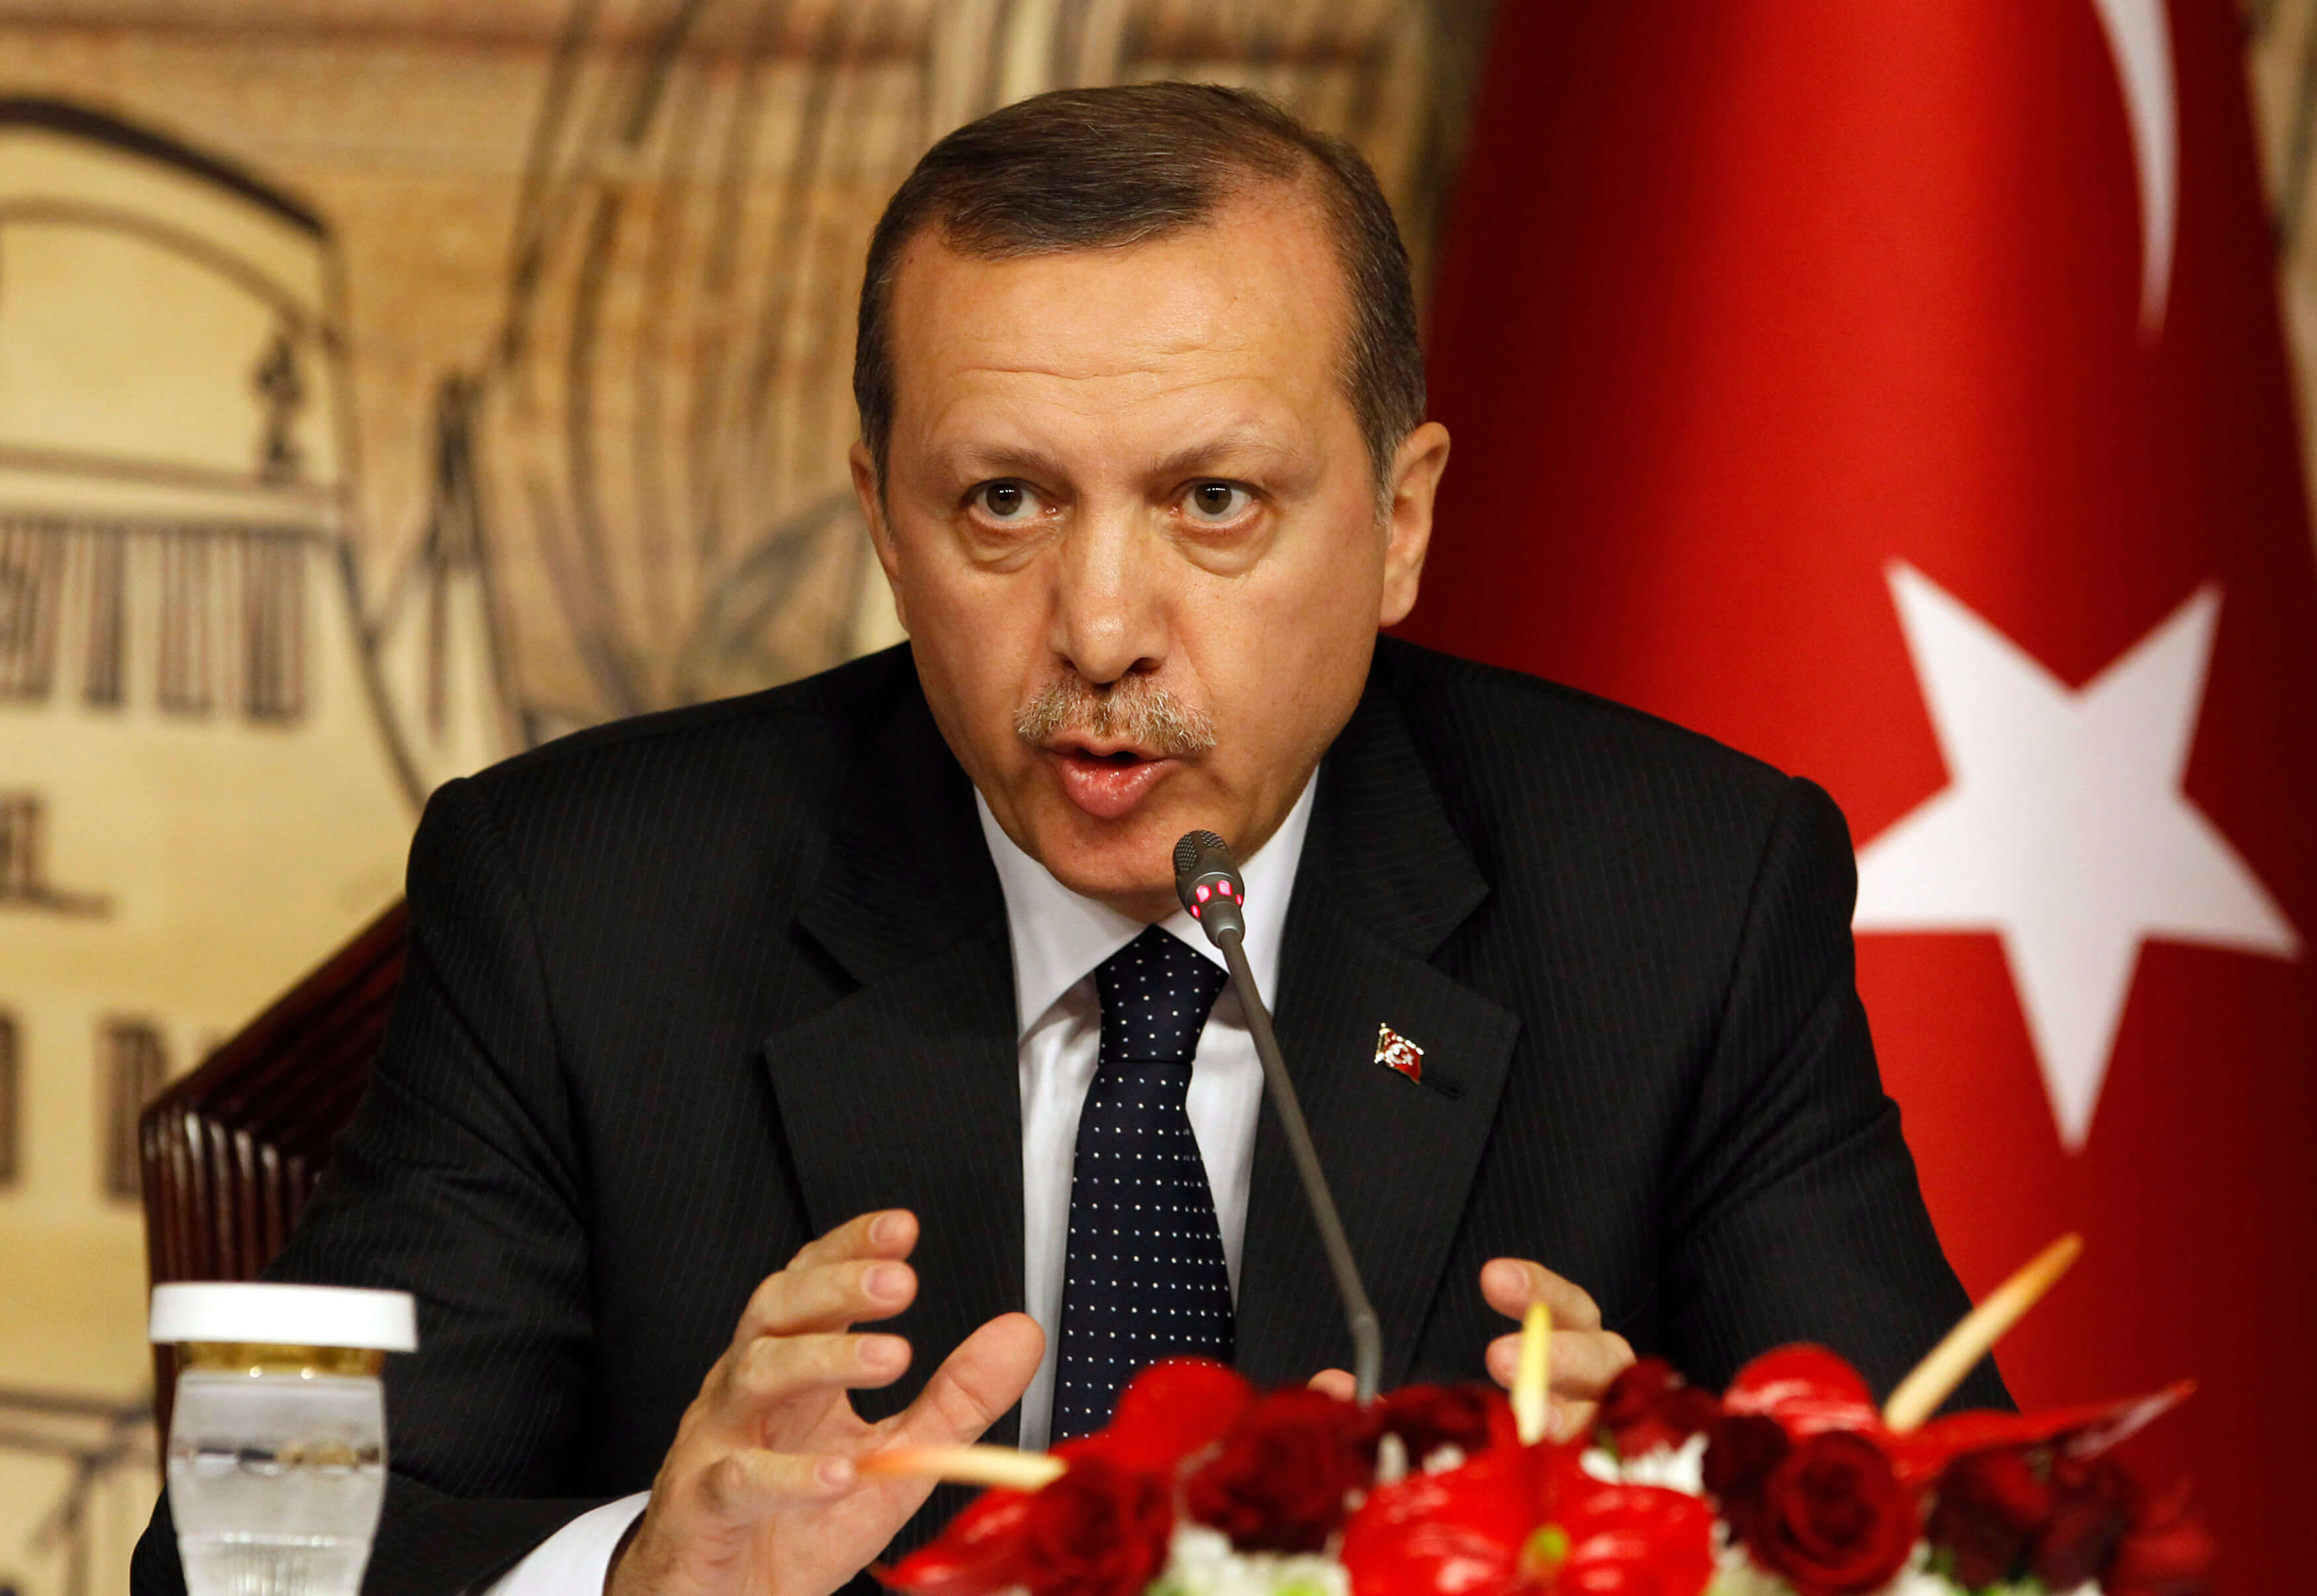 “Σουλτανικό” τσιφλίκι τα κατεχόμενα – Ισλαμοποίηση και ενσωμάτωση στην Τουρκία σχεδιάζει ο Ερντογάν!